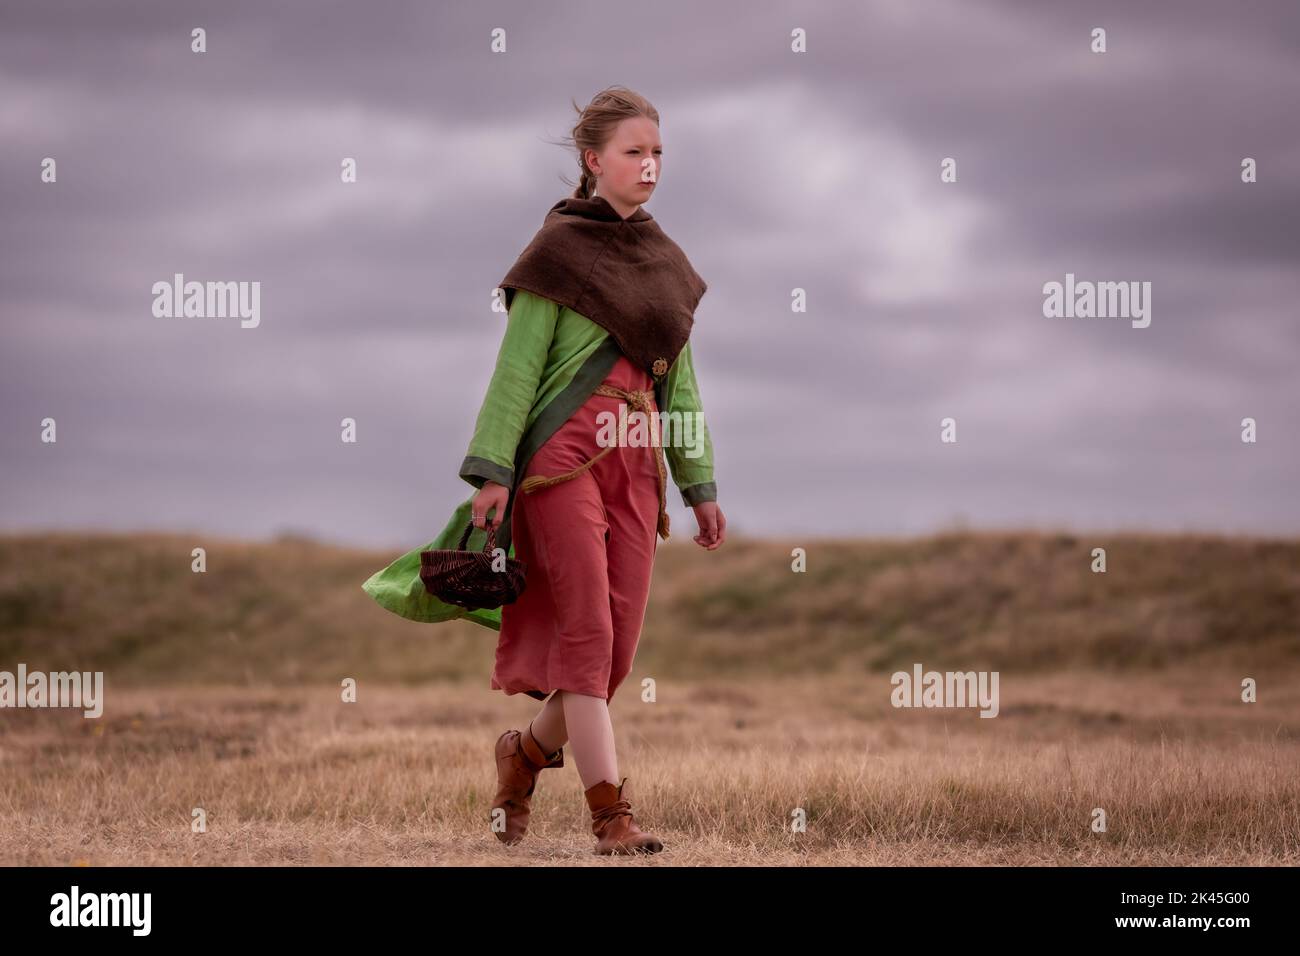 Woman participating in Trelleborg Vikings Festival, Trelleborg, Denmark Stock Photo